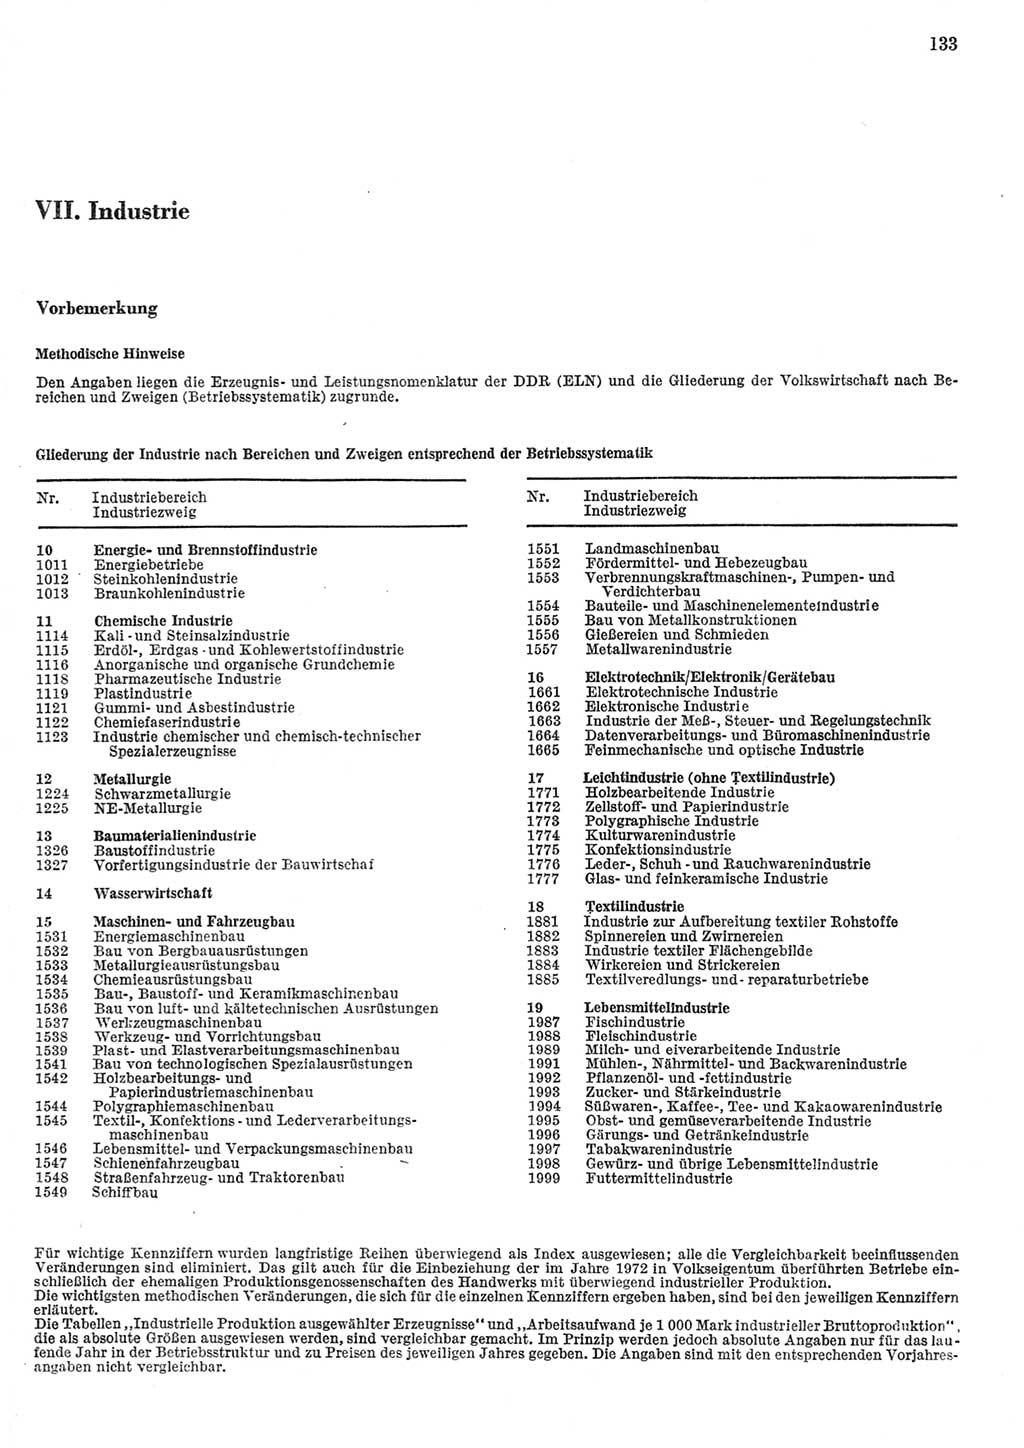 Statistisches Jahrbuch der Deutschen Demokratischen Republik (DDR) 1984, Seite 133 (Stat. Jb. DDR 1984, S. 133)